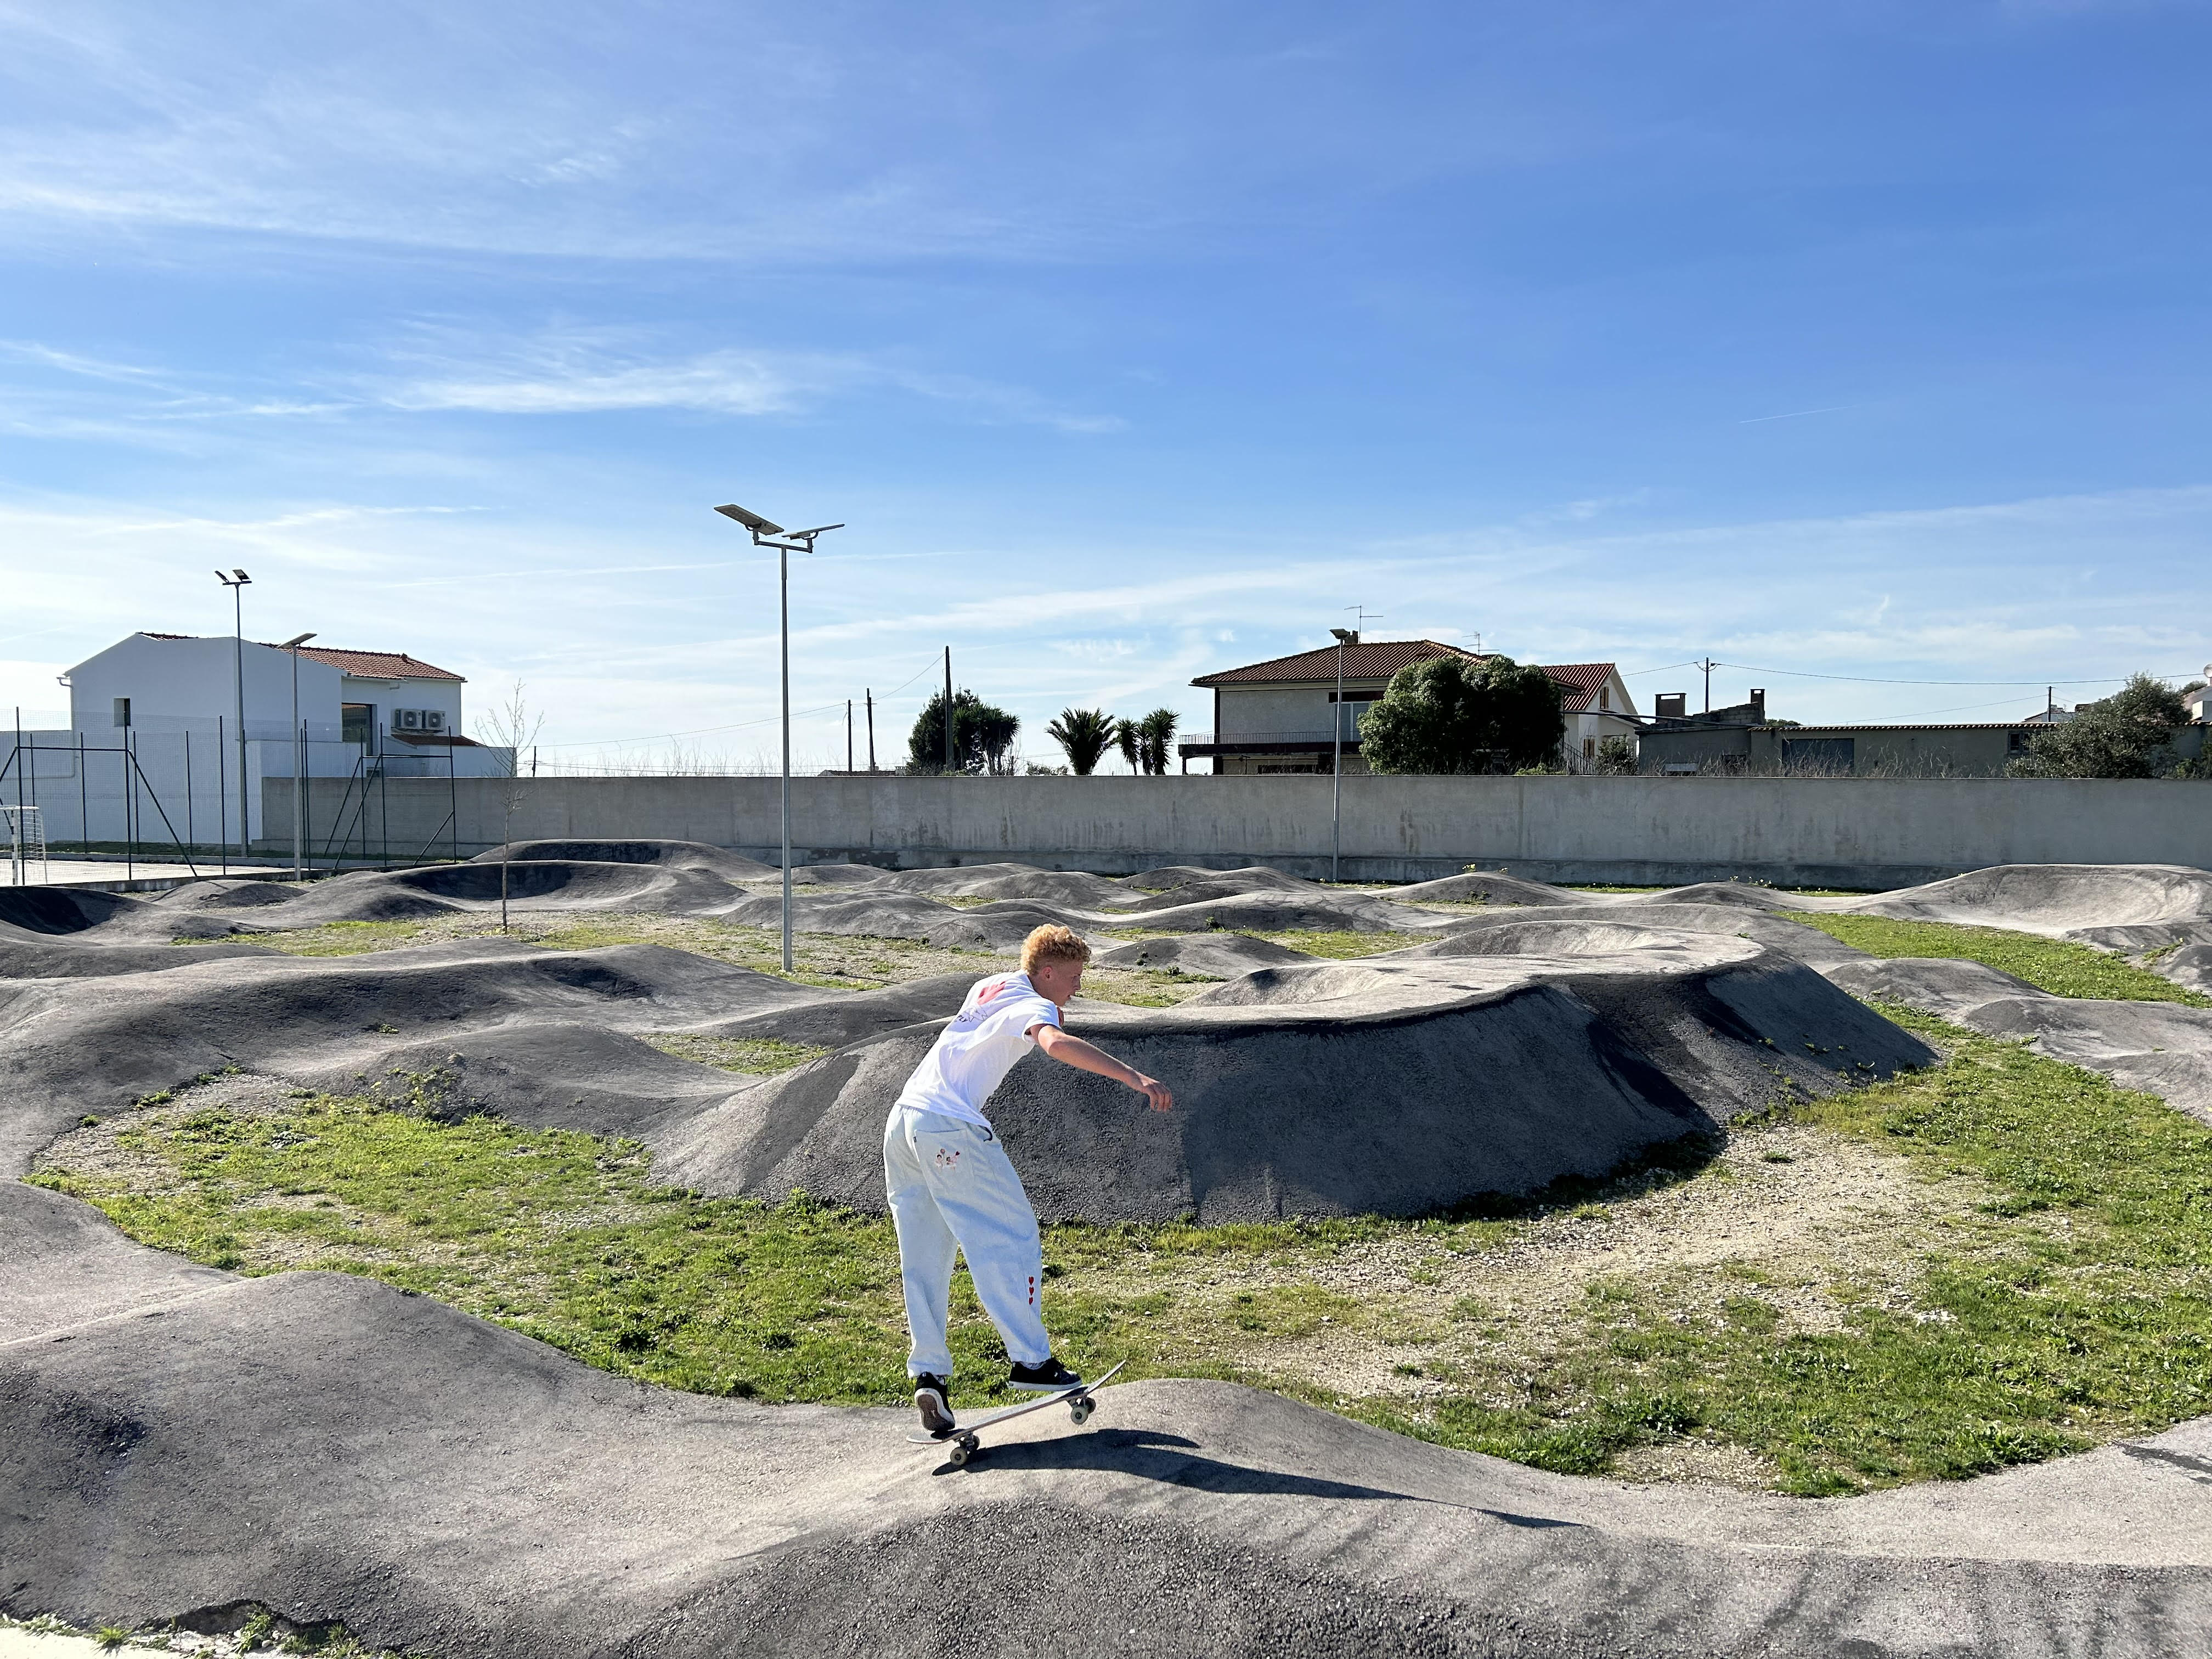 Alqueidão da Serra skatepark